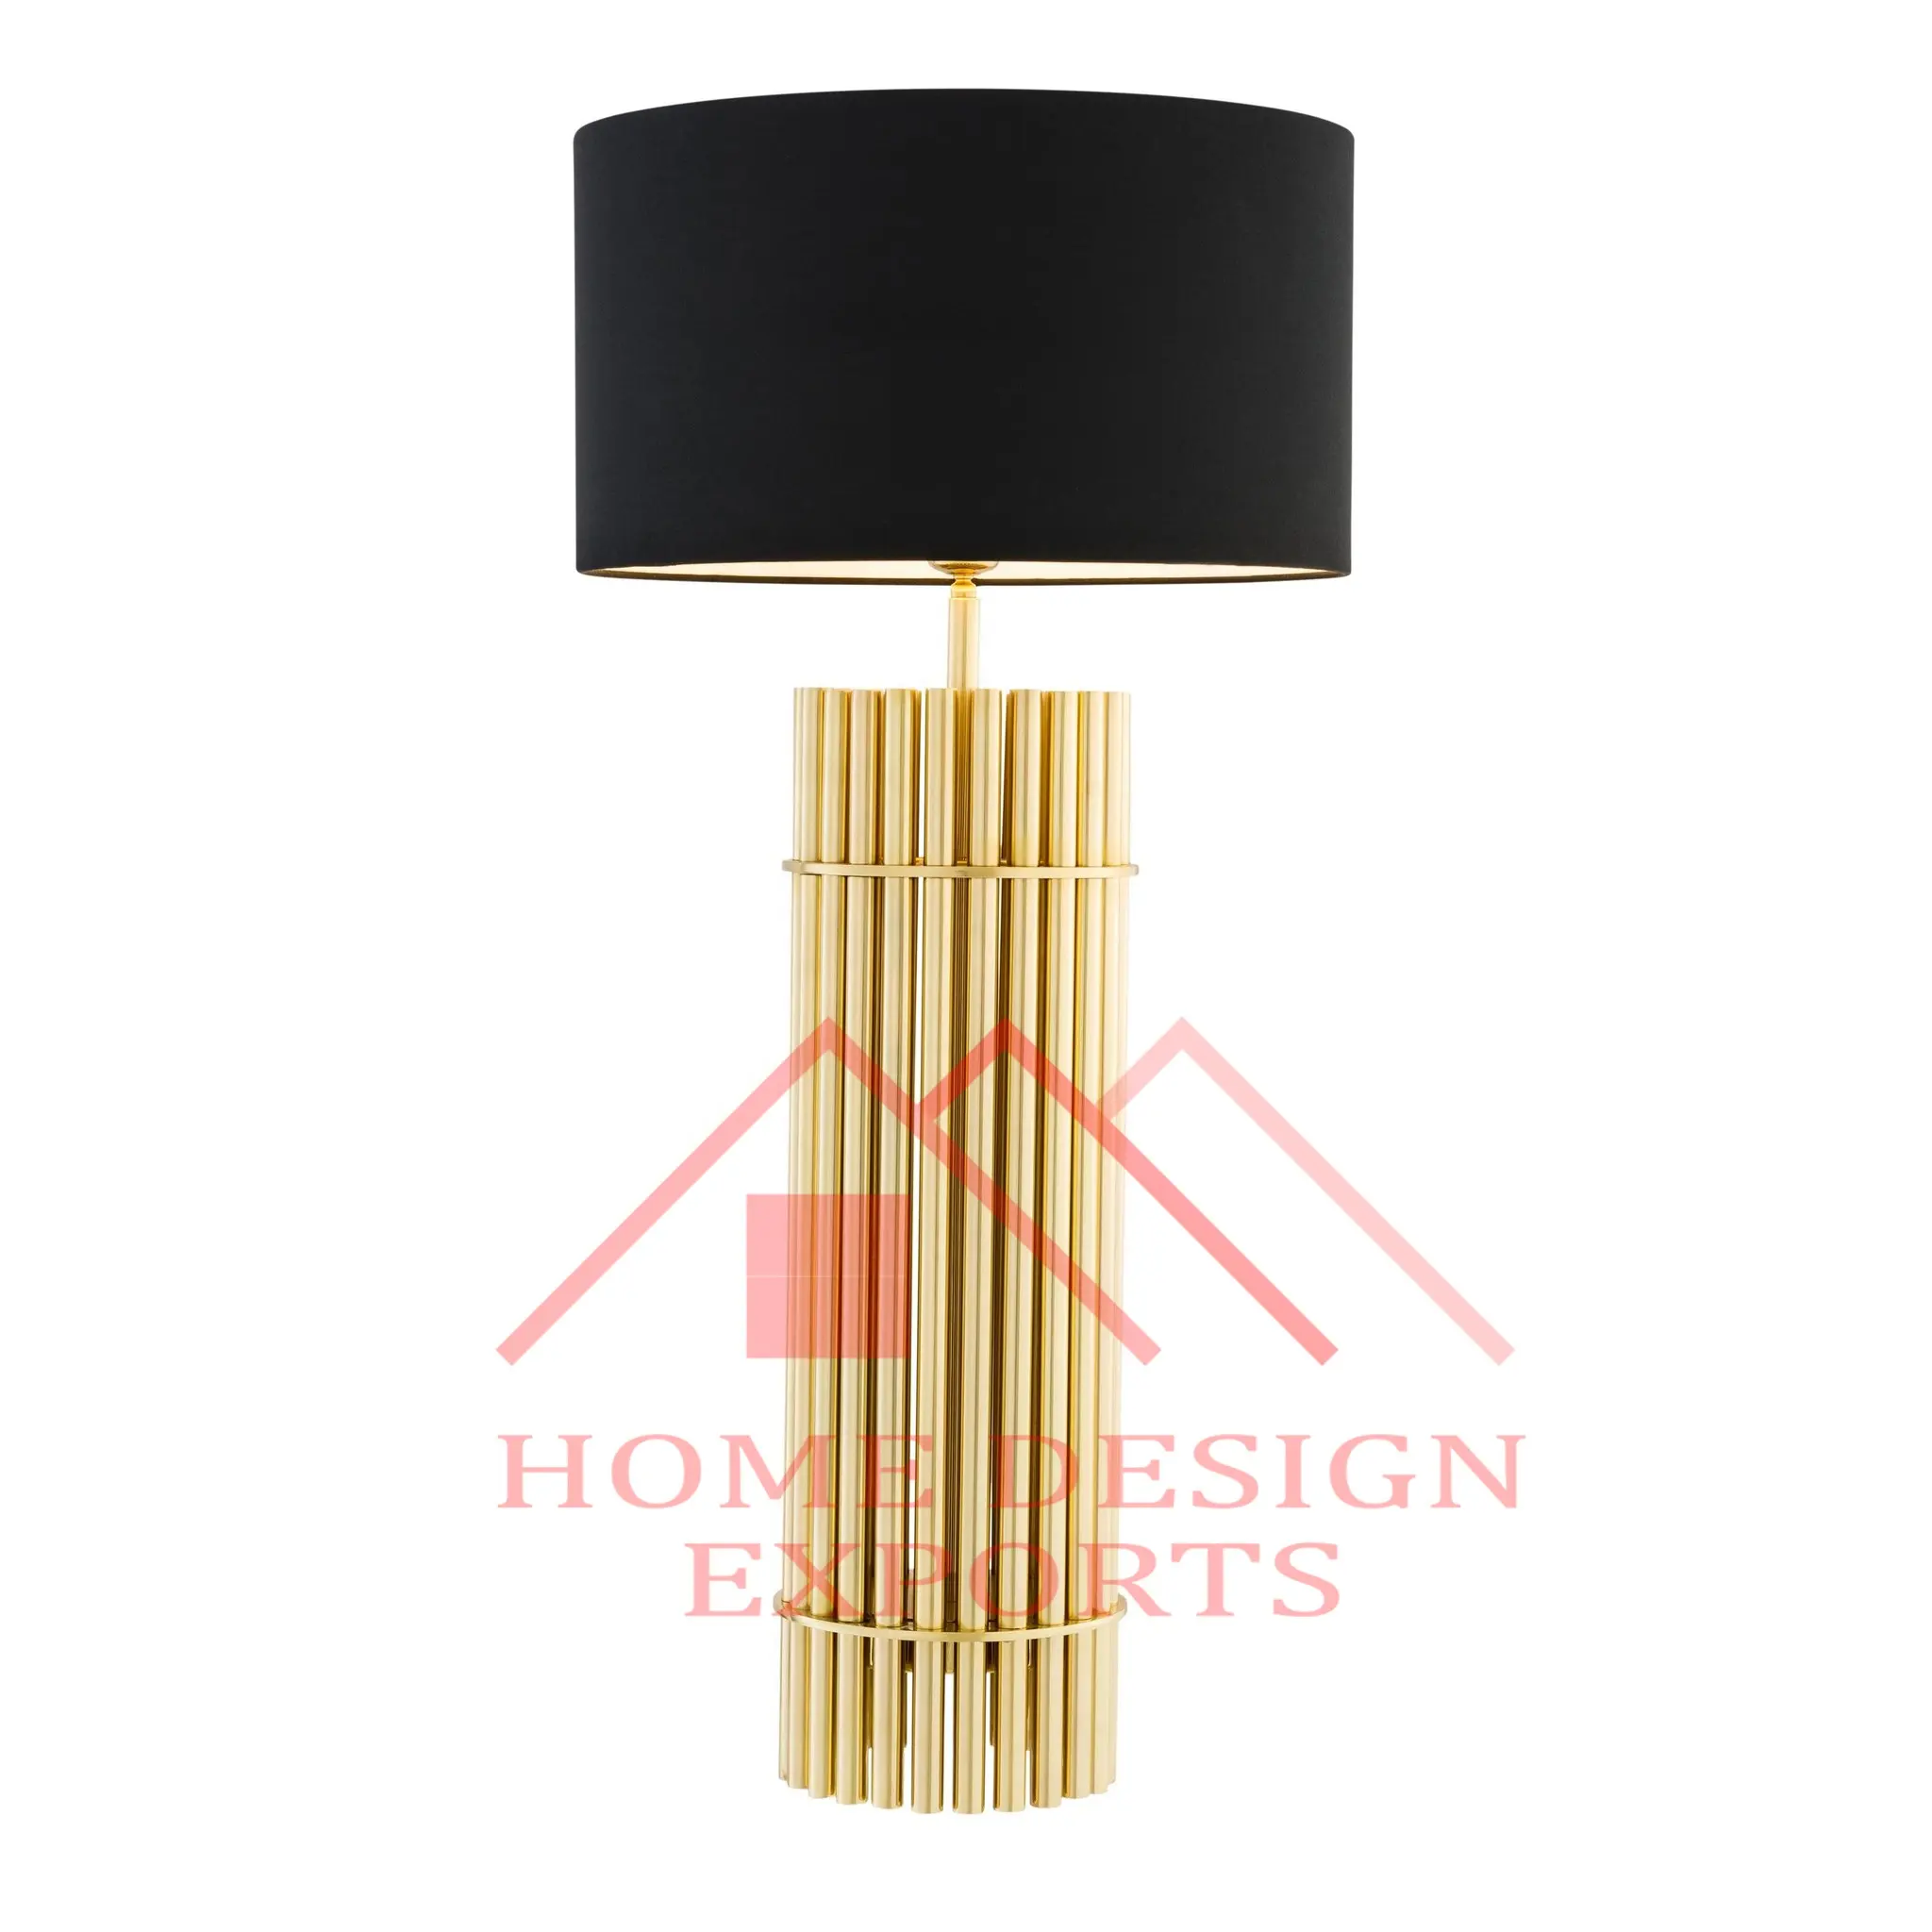 Nachtbed Slaapkamer Fancy Tafellamp Voor Huis & Hotel Interieurdecoraties Premium Kwaliteit Metalen Vloerlamp Decoratie